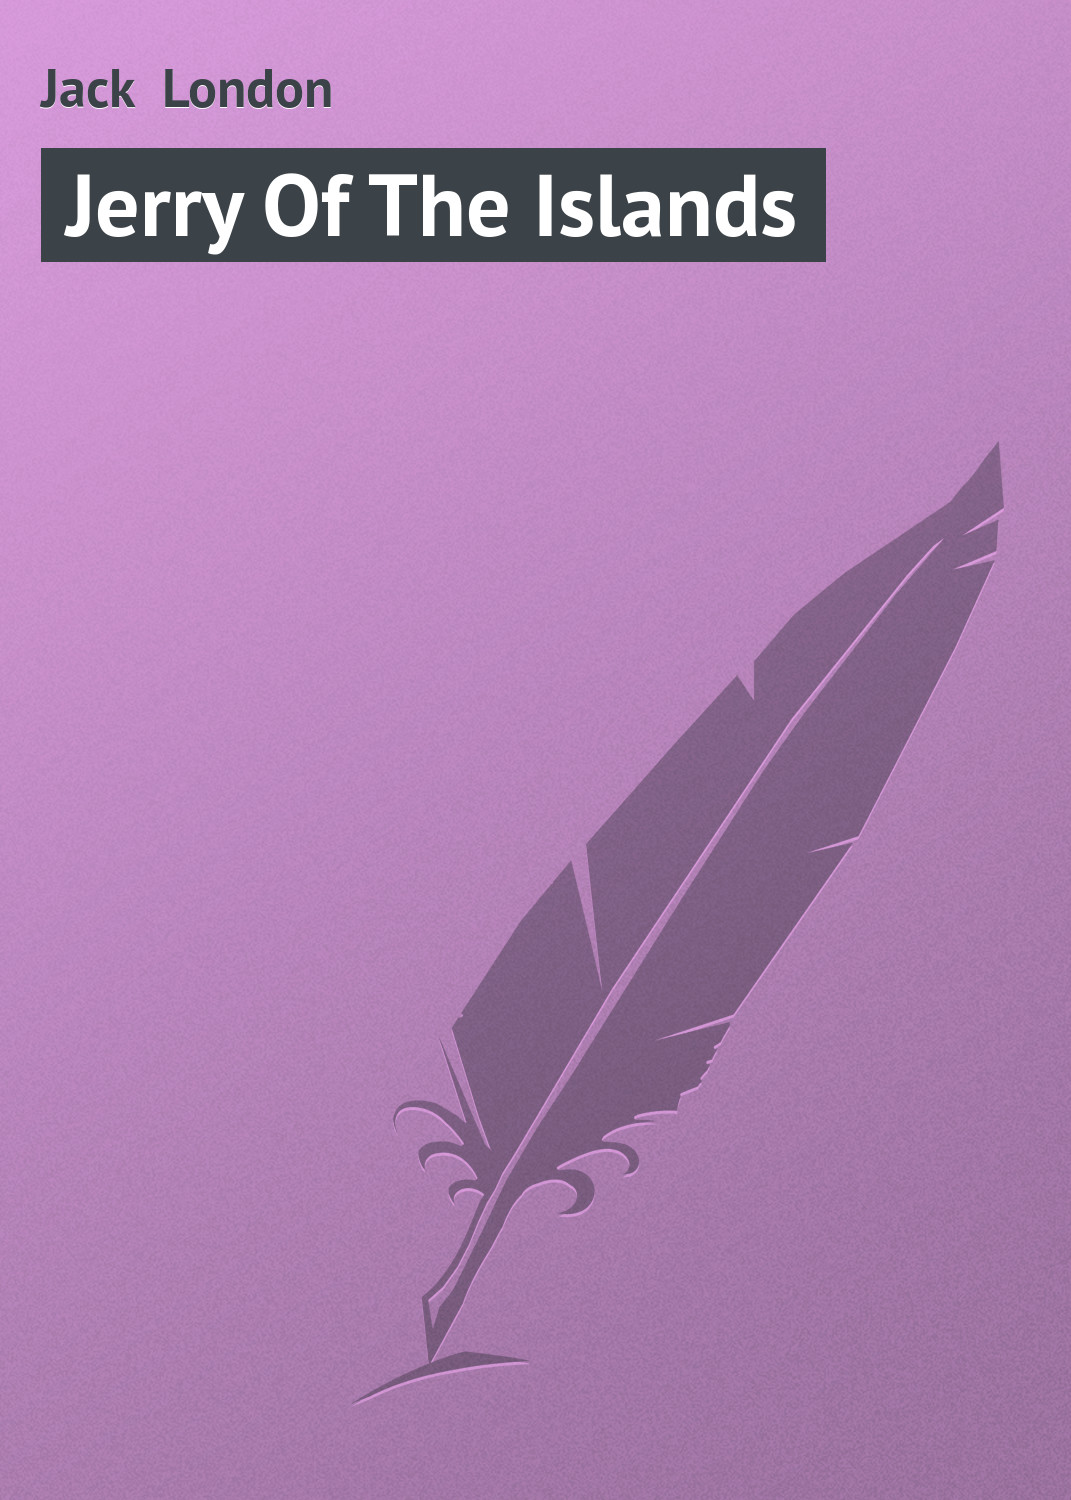 Книга Jerry Of The Islands из серии , созданная Jack London, может относится к жанру Зарубежная старинная литература, Зарубежная классика. Стоимость электронной книги Jerry Of The Islands с идентификатором 21103214 составляет 5.99 руб.